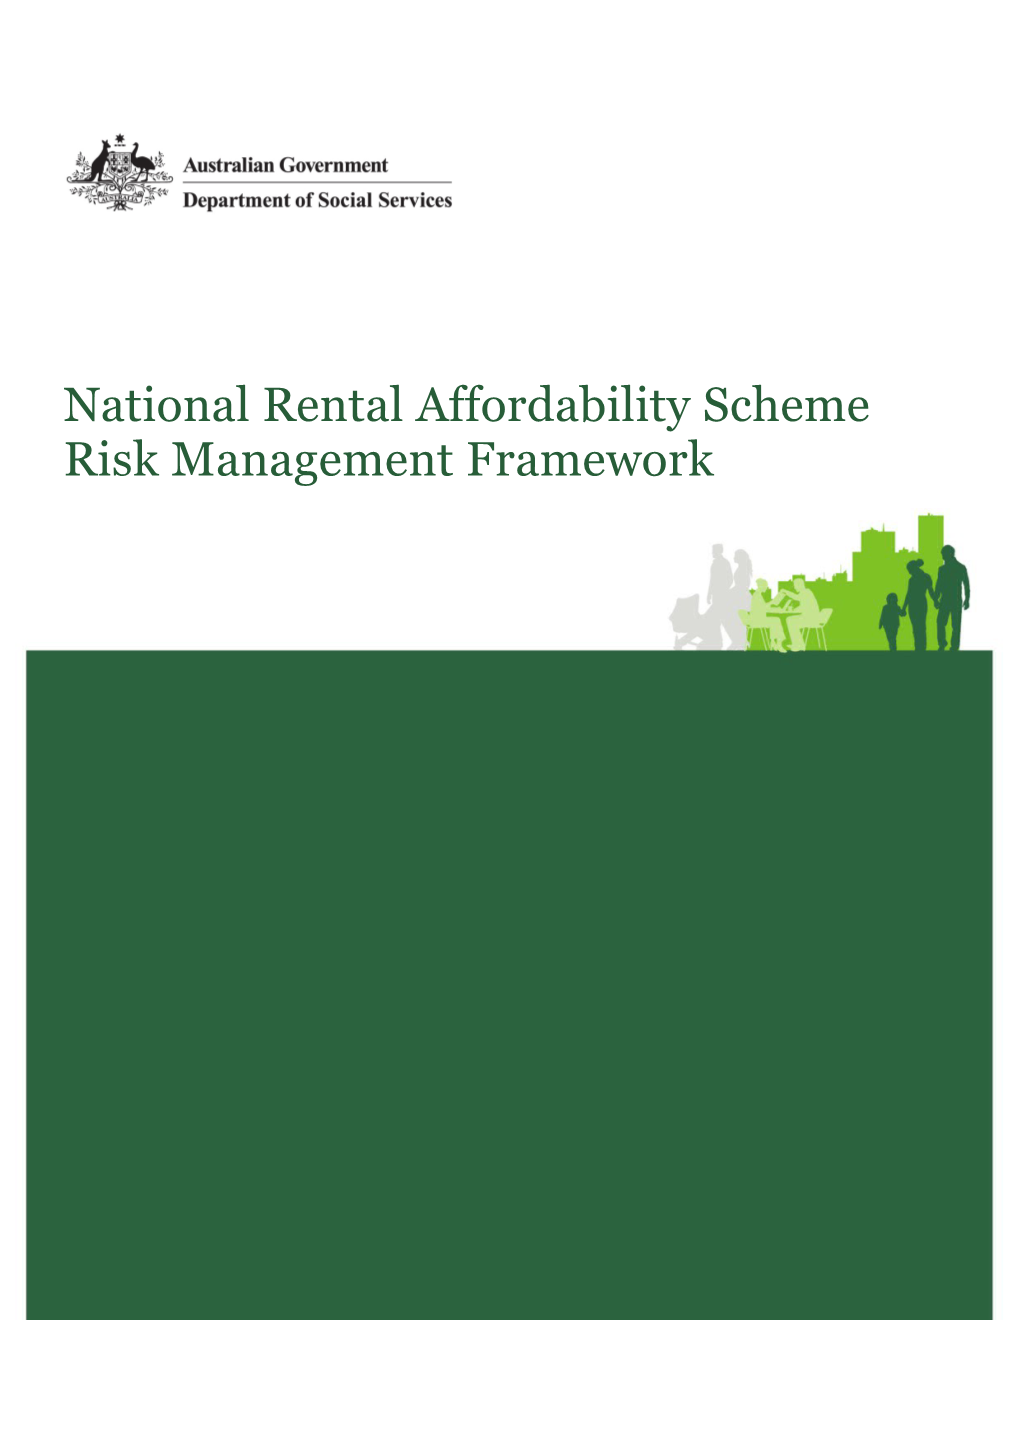 National Rental Affordability Scheme Risk Management Framework